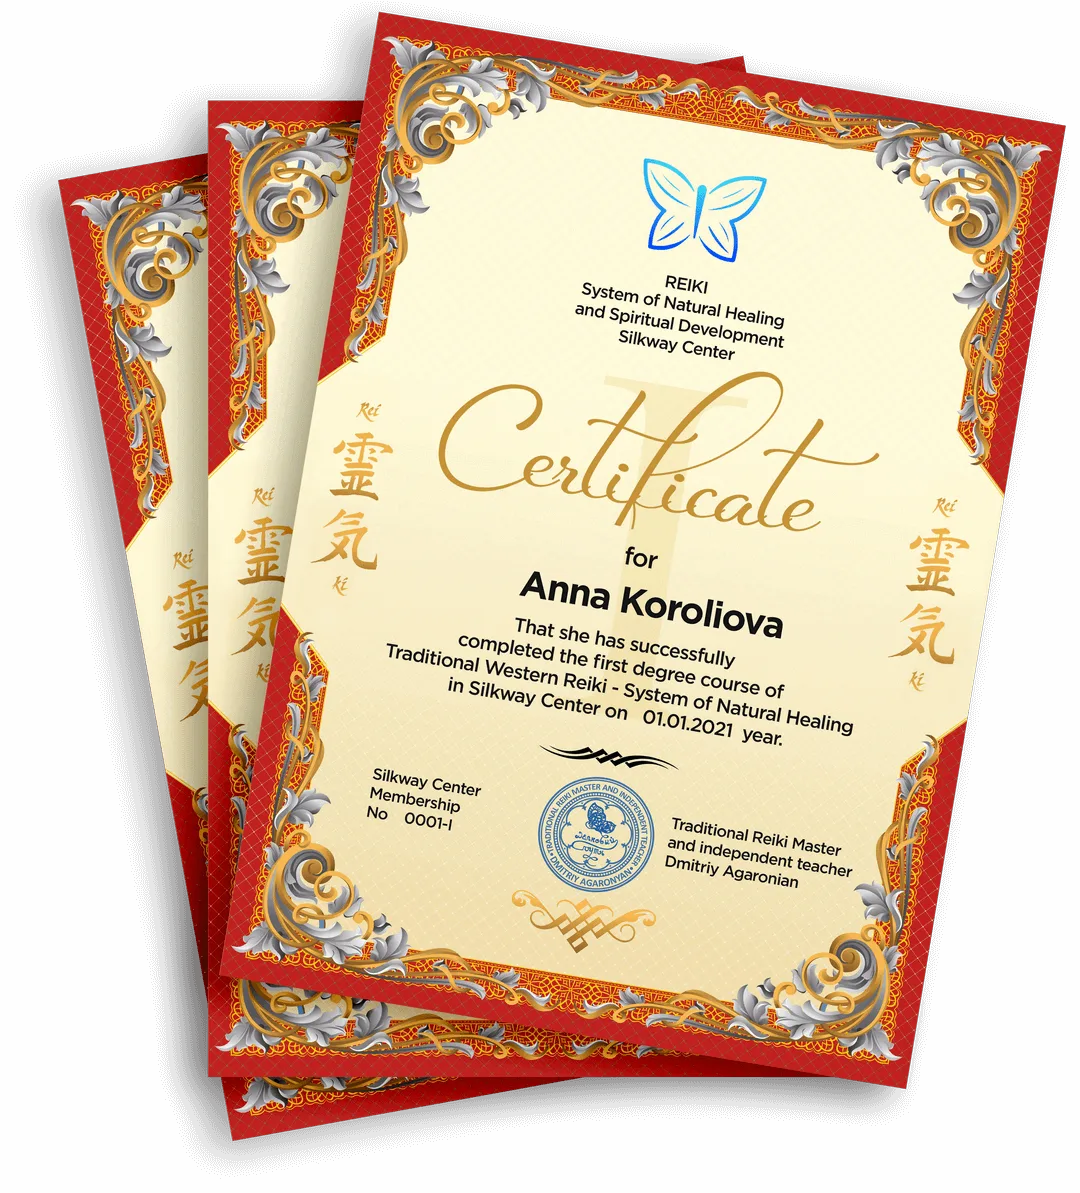 изображение сертификатов школы Дмитрия Агароняна